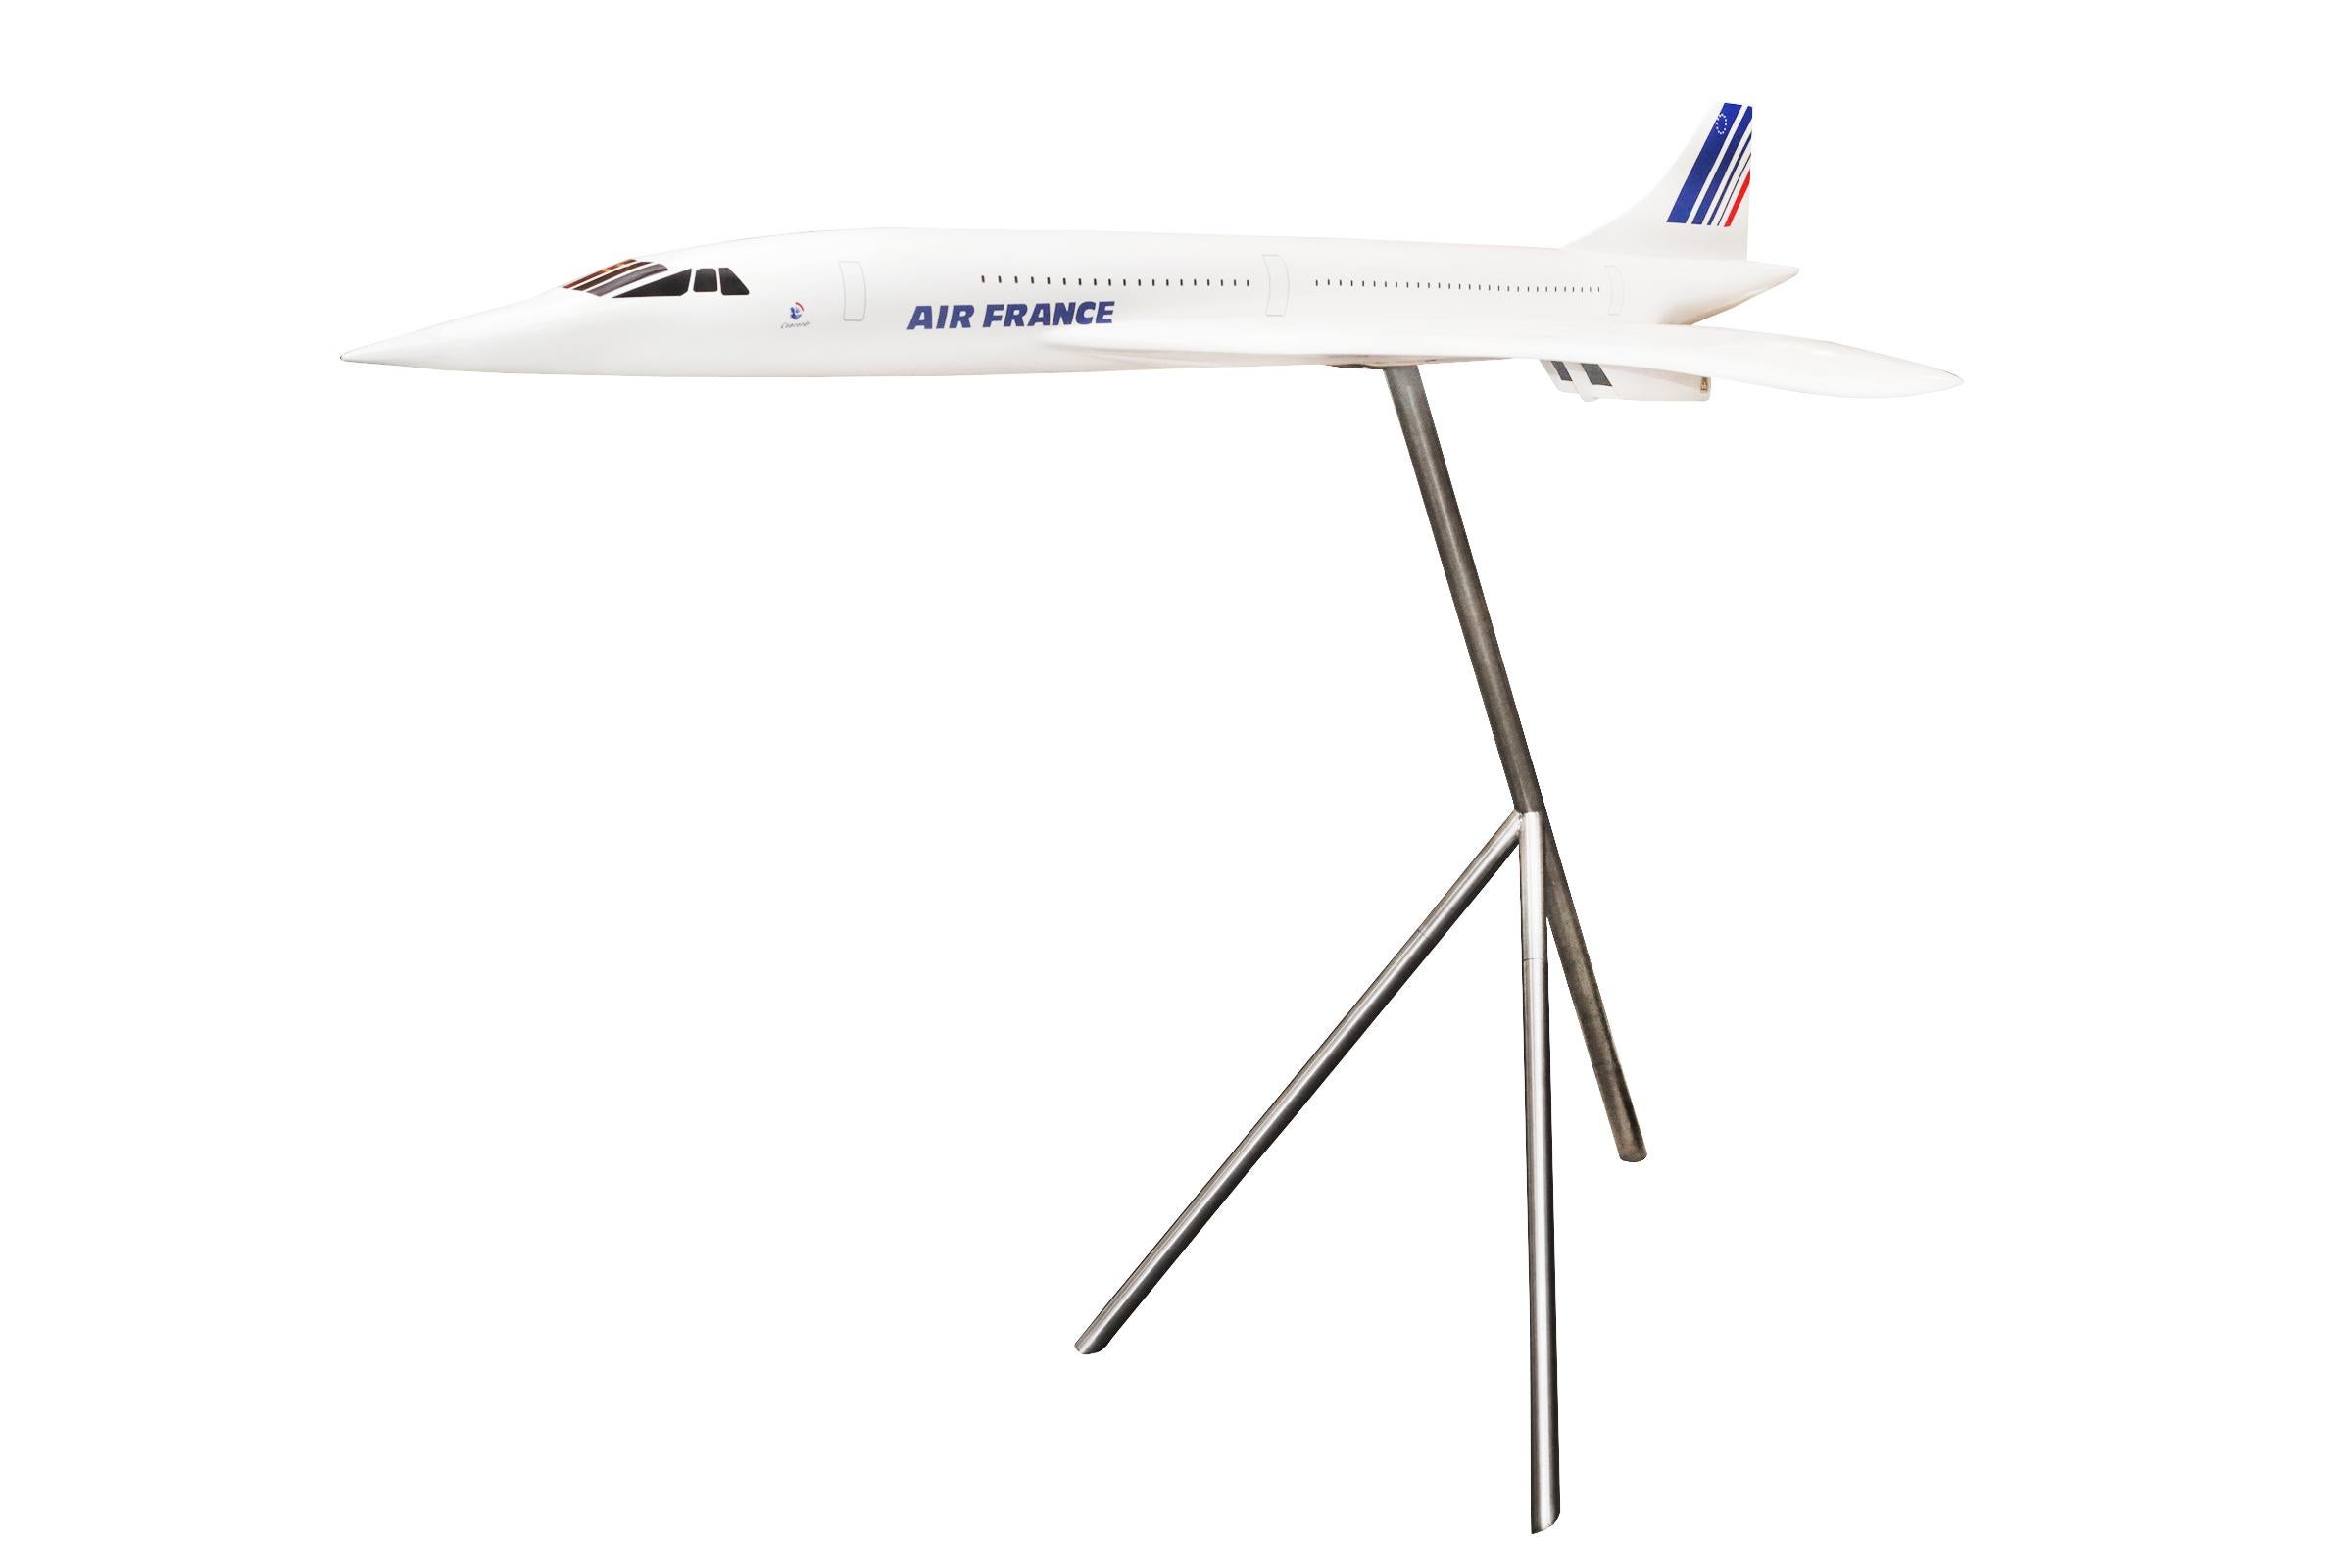 Concorde Modèle réduit 1/36 sculpture,
en fibre de résine, sur base en aluminium poli.
De l'Agence Air France.
Sur la base : hauteur 110cm.